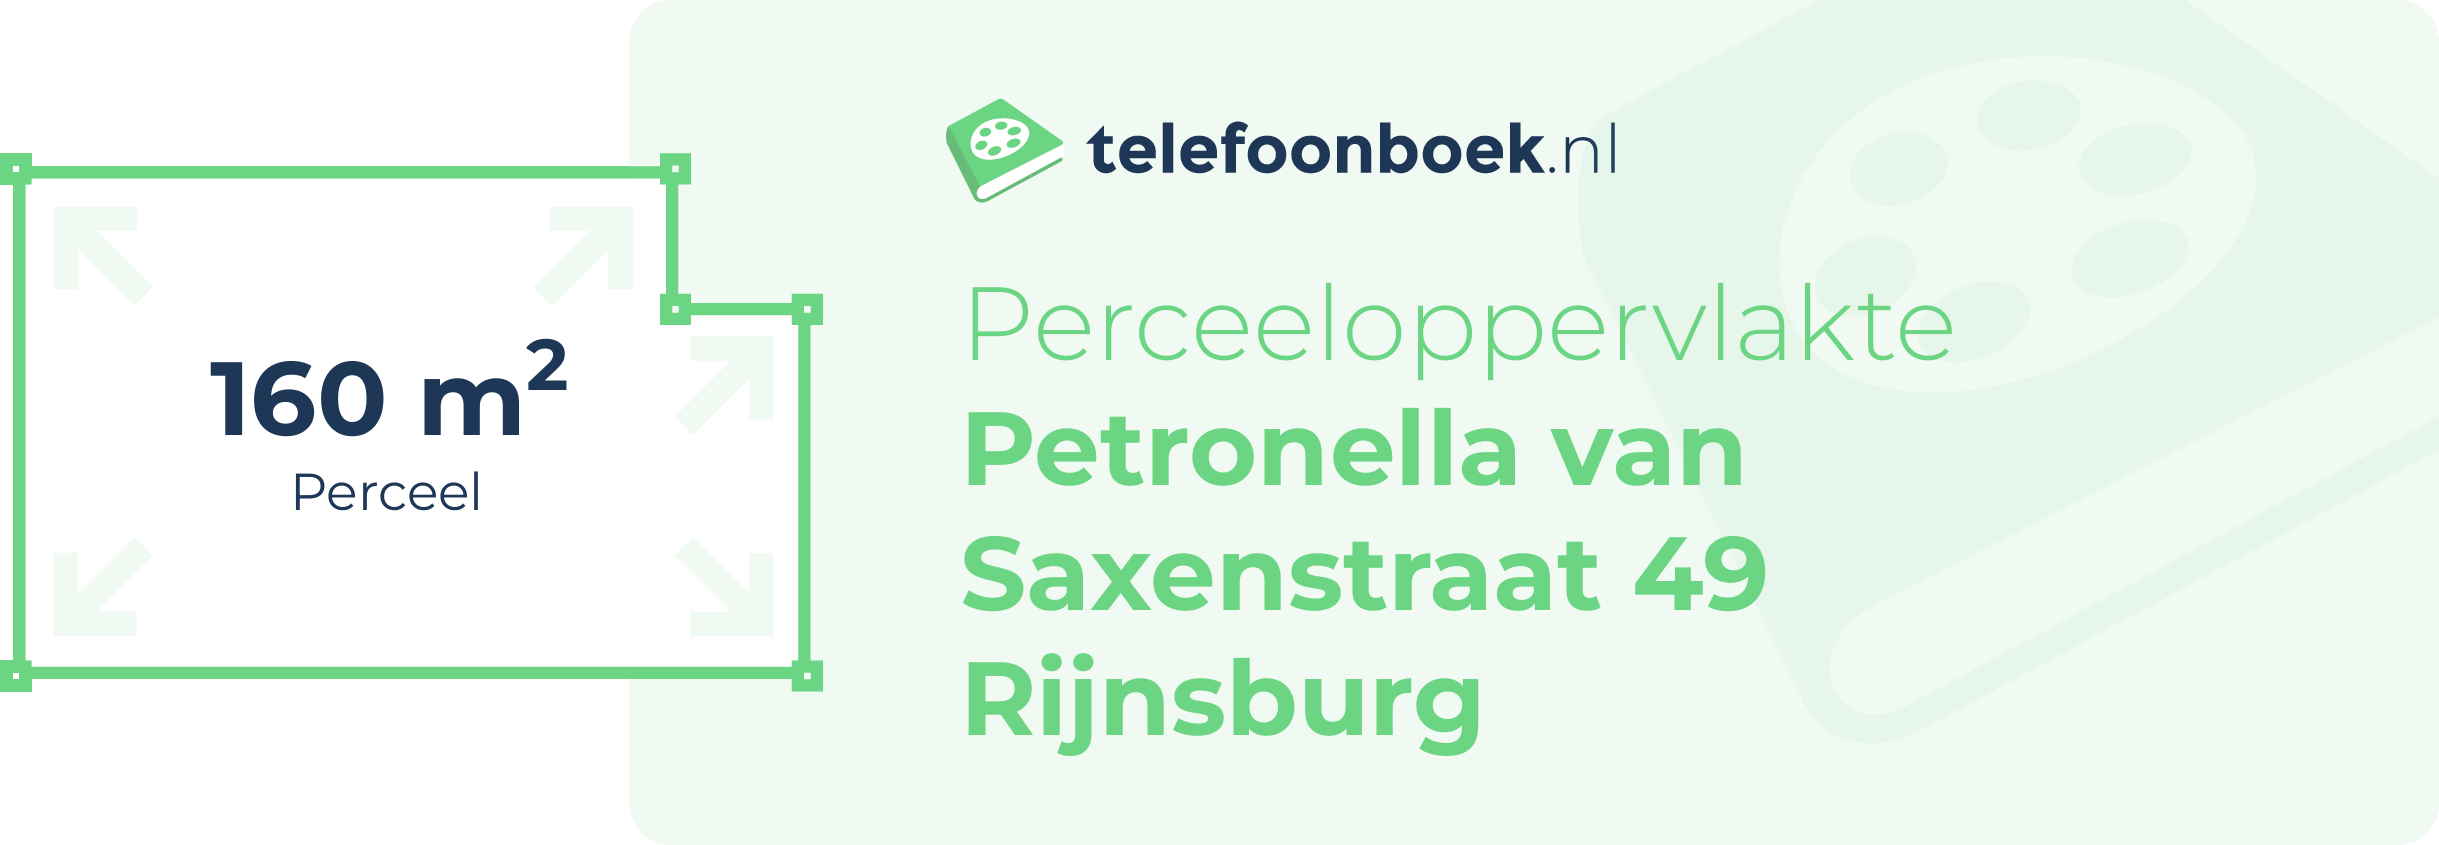 Perceeloppervlakte Petronella Van Saxenstraat 49 Rijnsburg